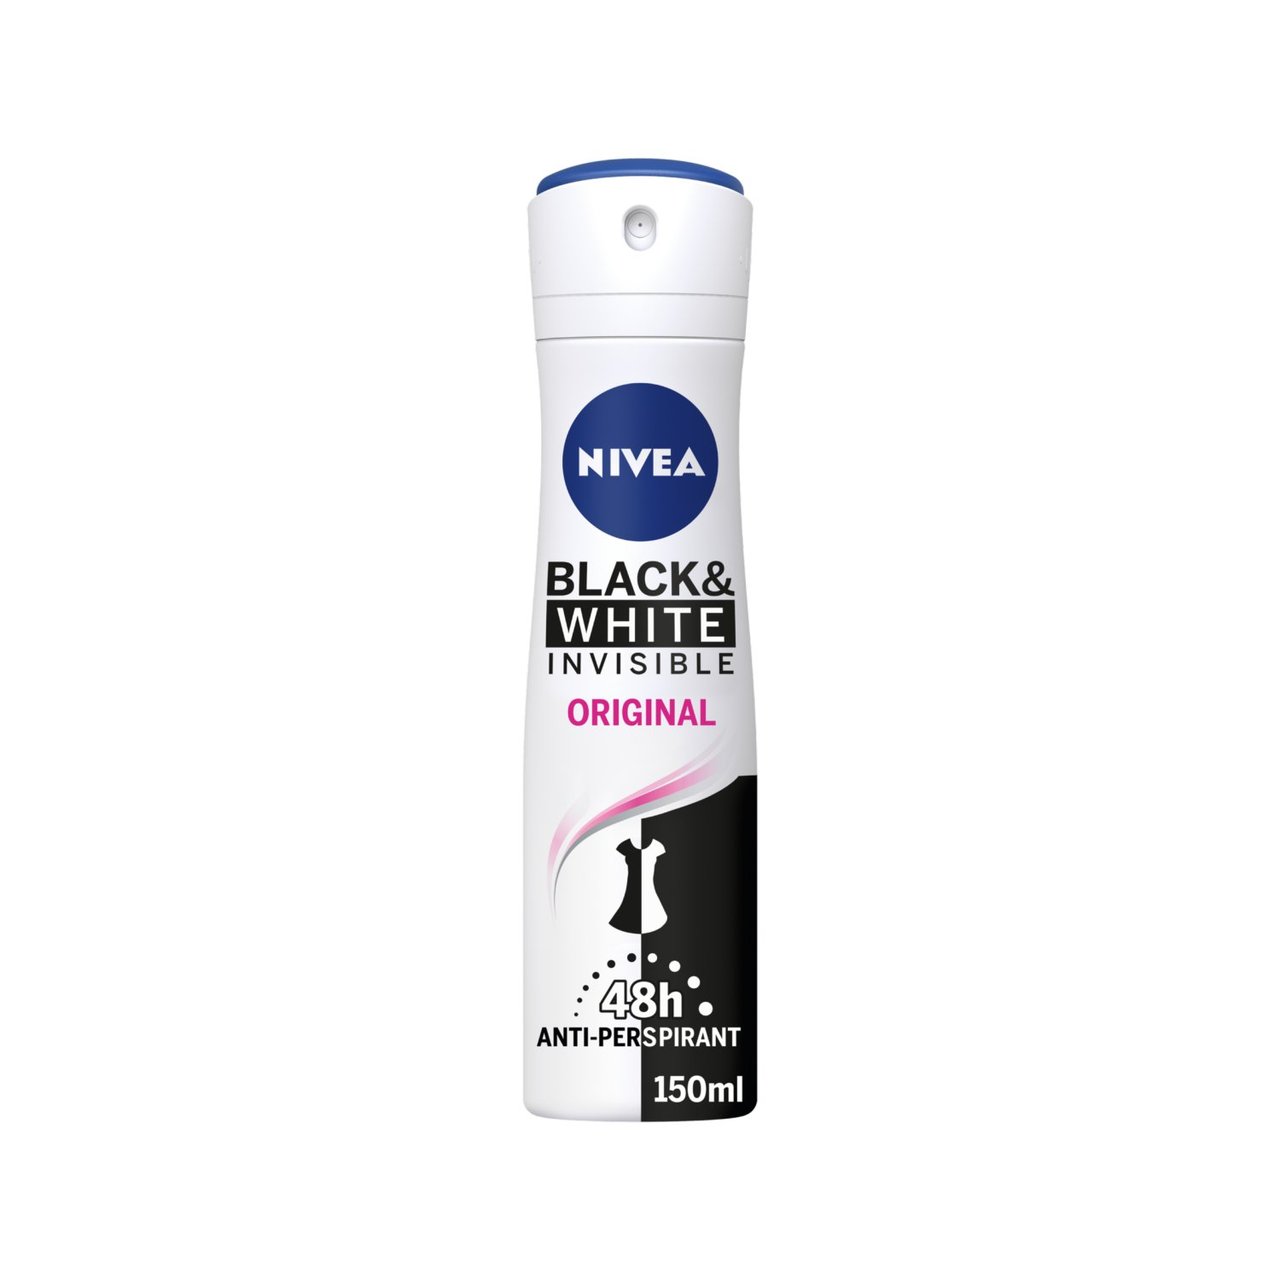 Nivea Black & White Invisible Clear Anti-Perspirant Deodorant